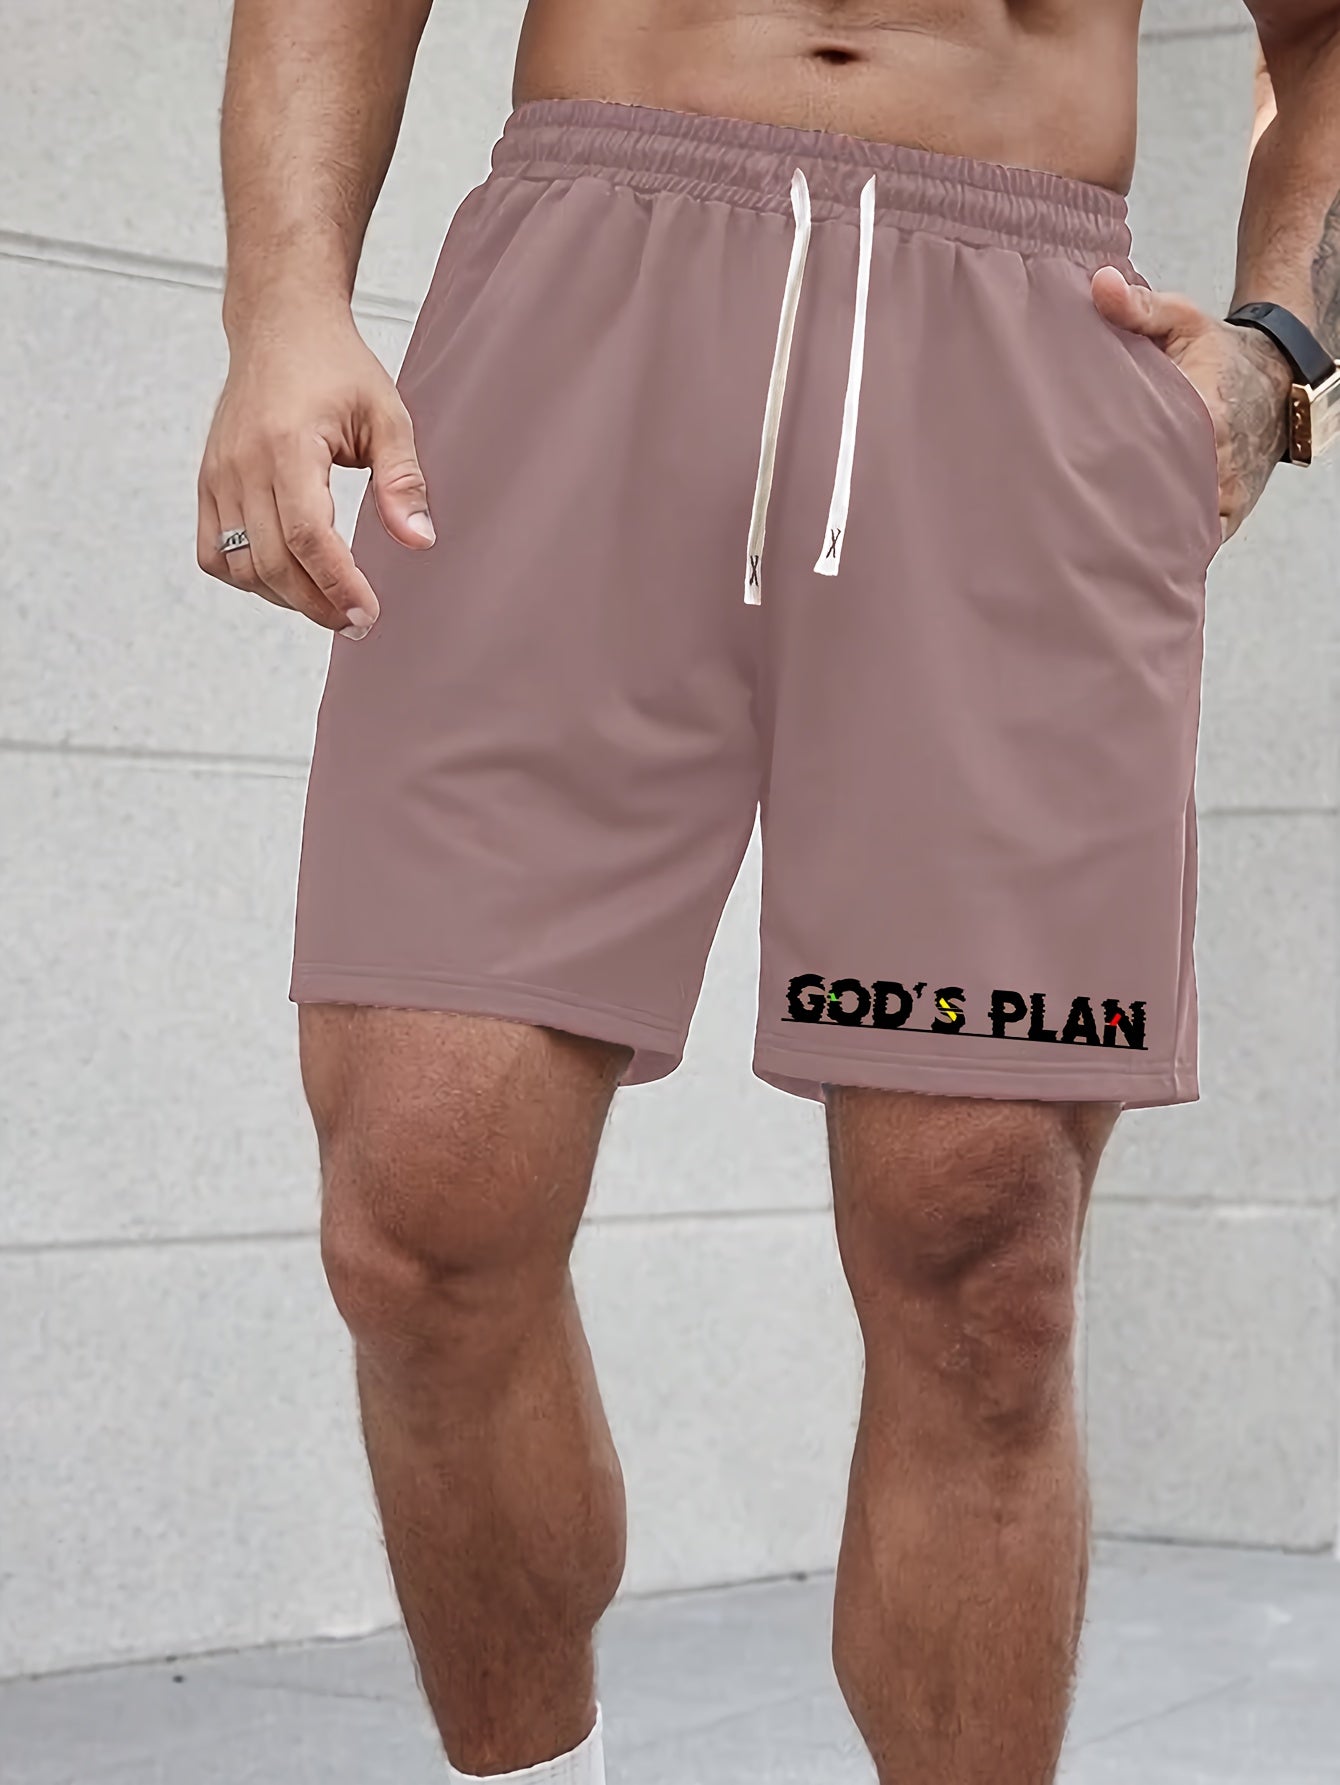 God's Plan Men's Christian Shorts claimedbygoddesigns